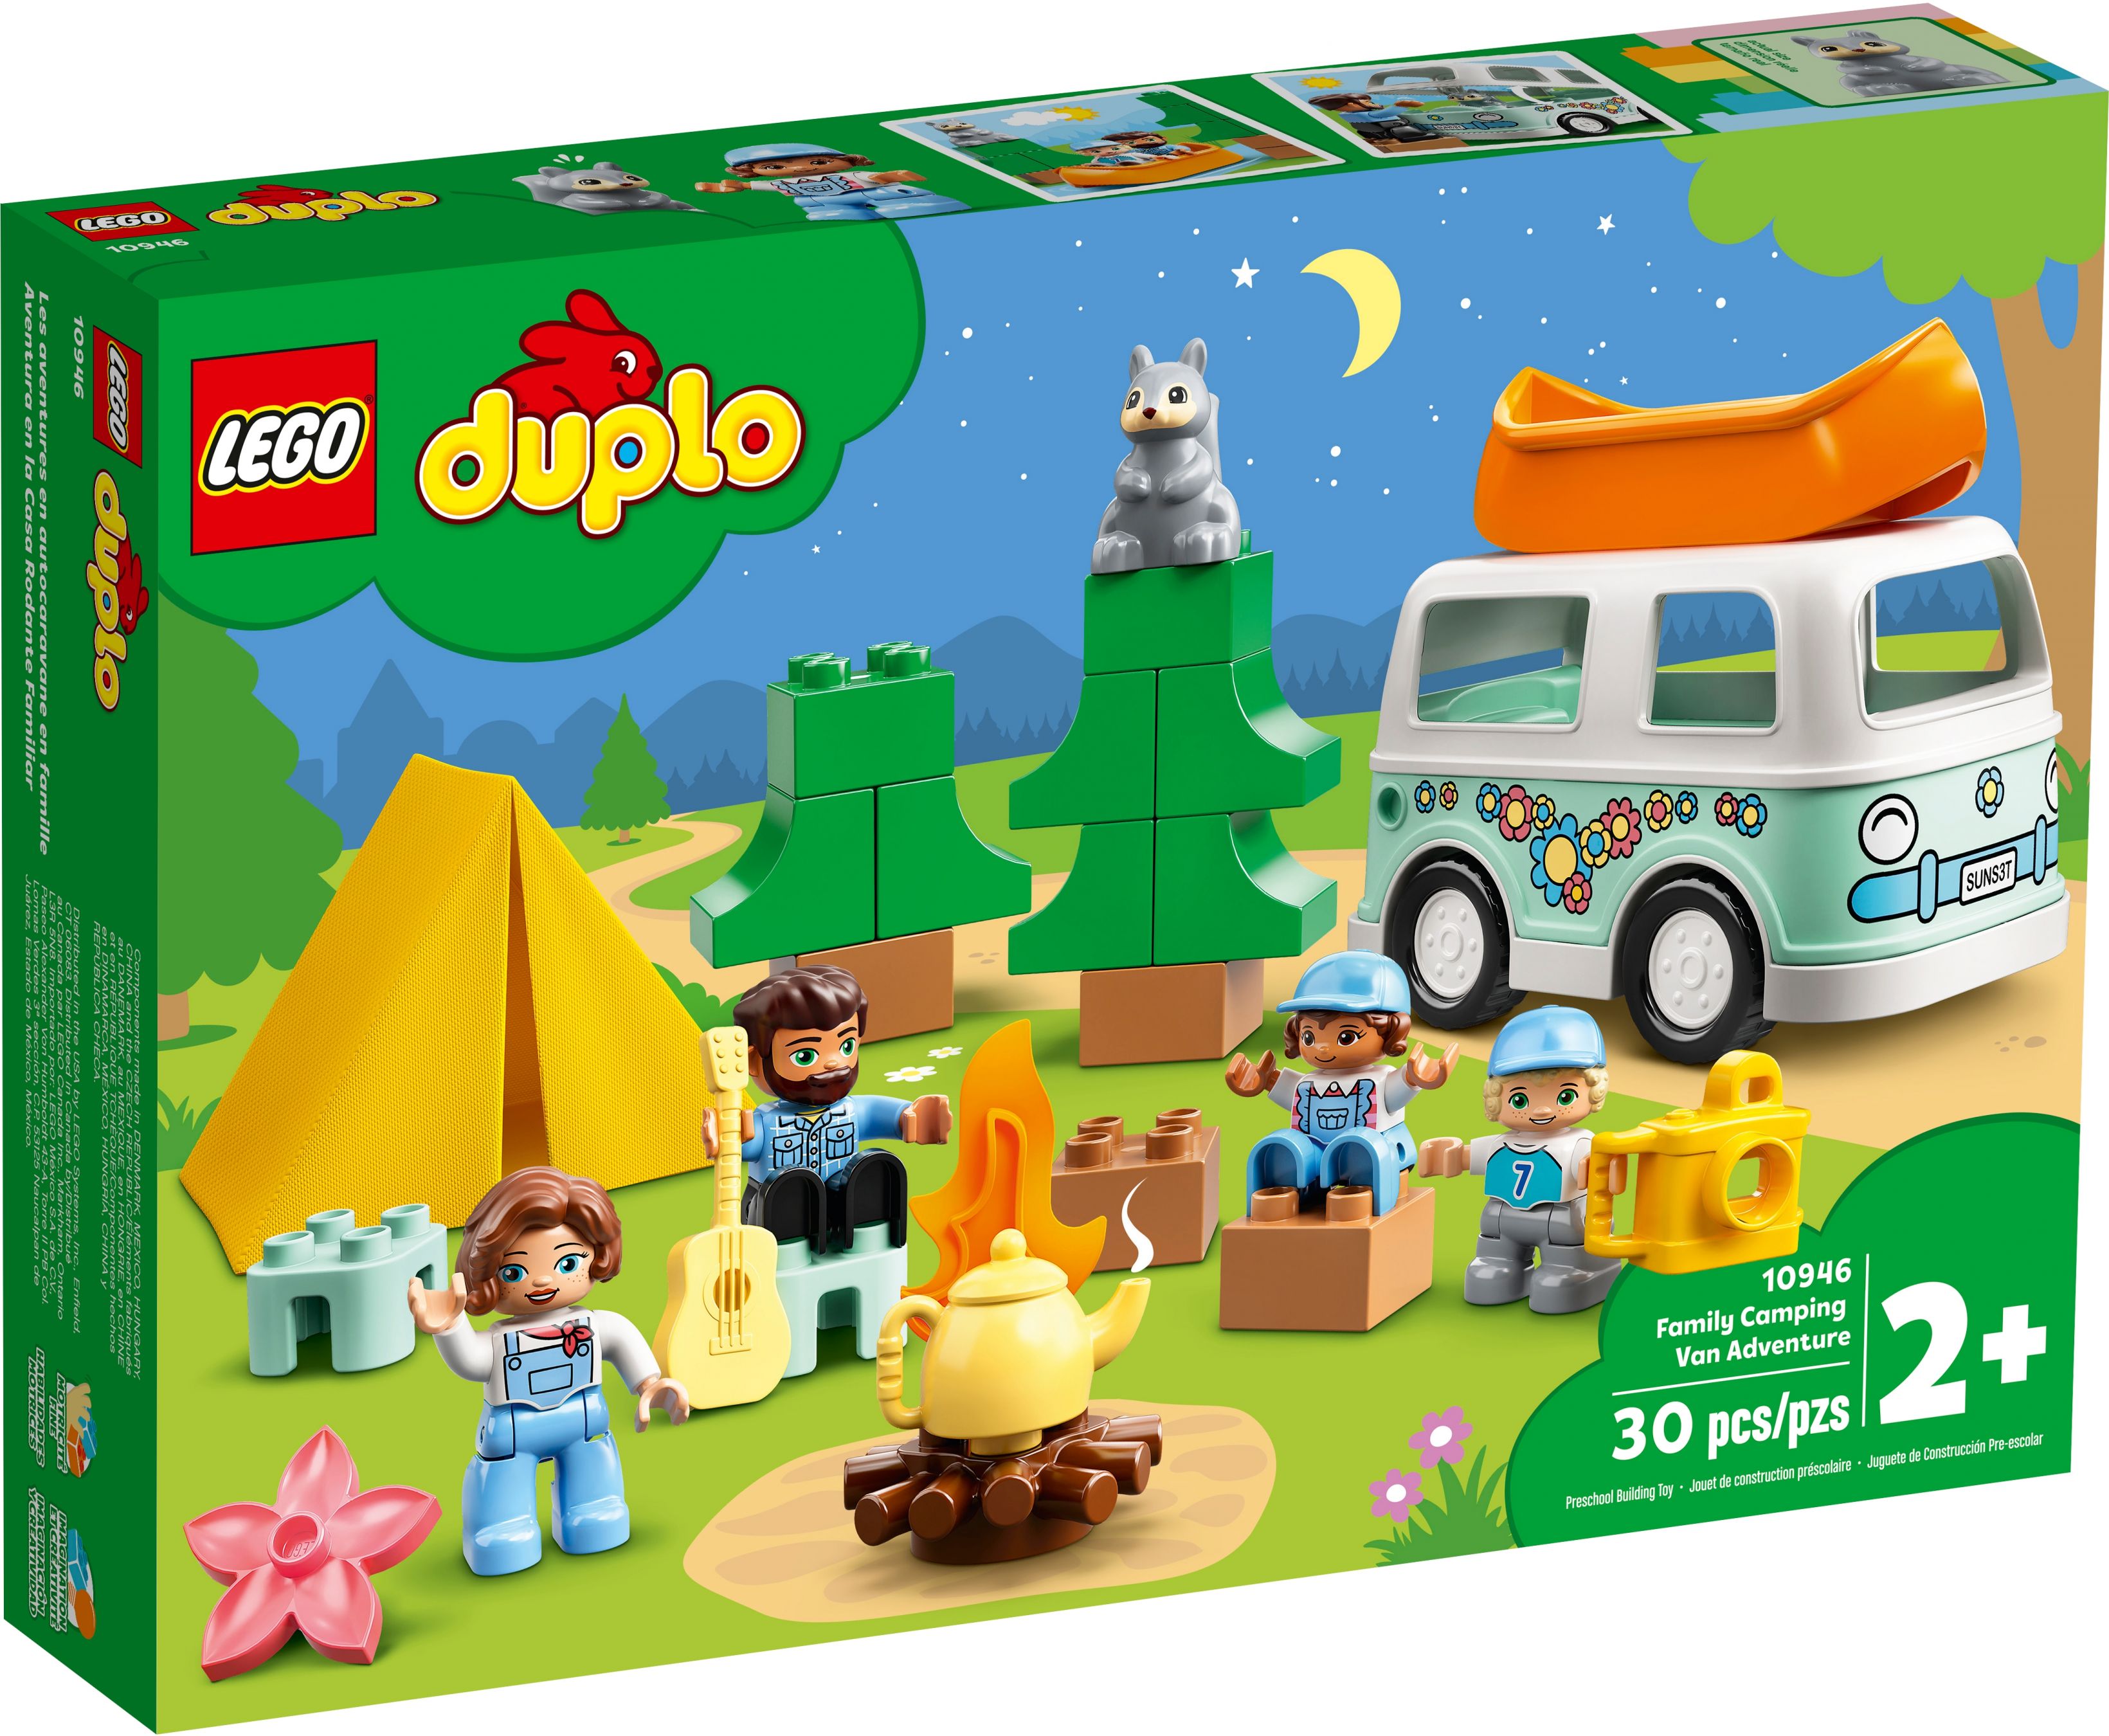 LEGO Duplo 10946 Familienabenteuer mit Campingbus LEGO_10946_alt1.jpg